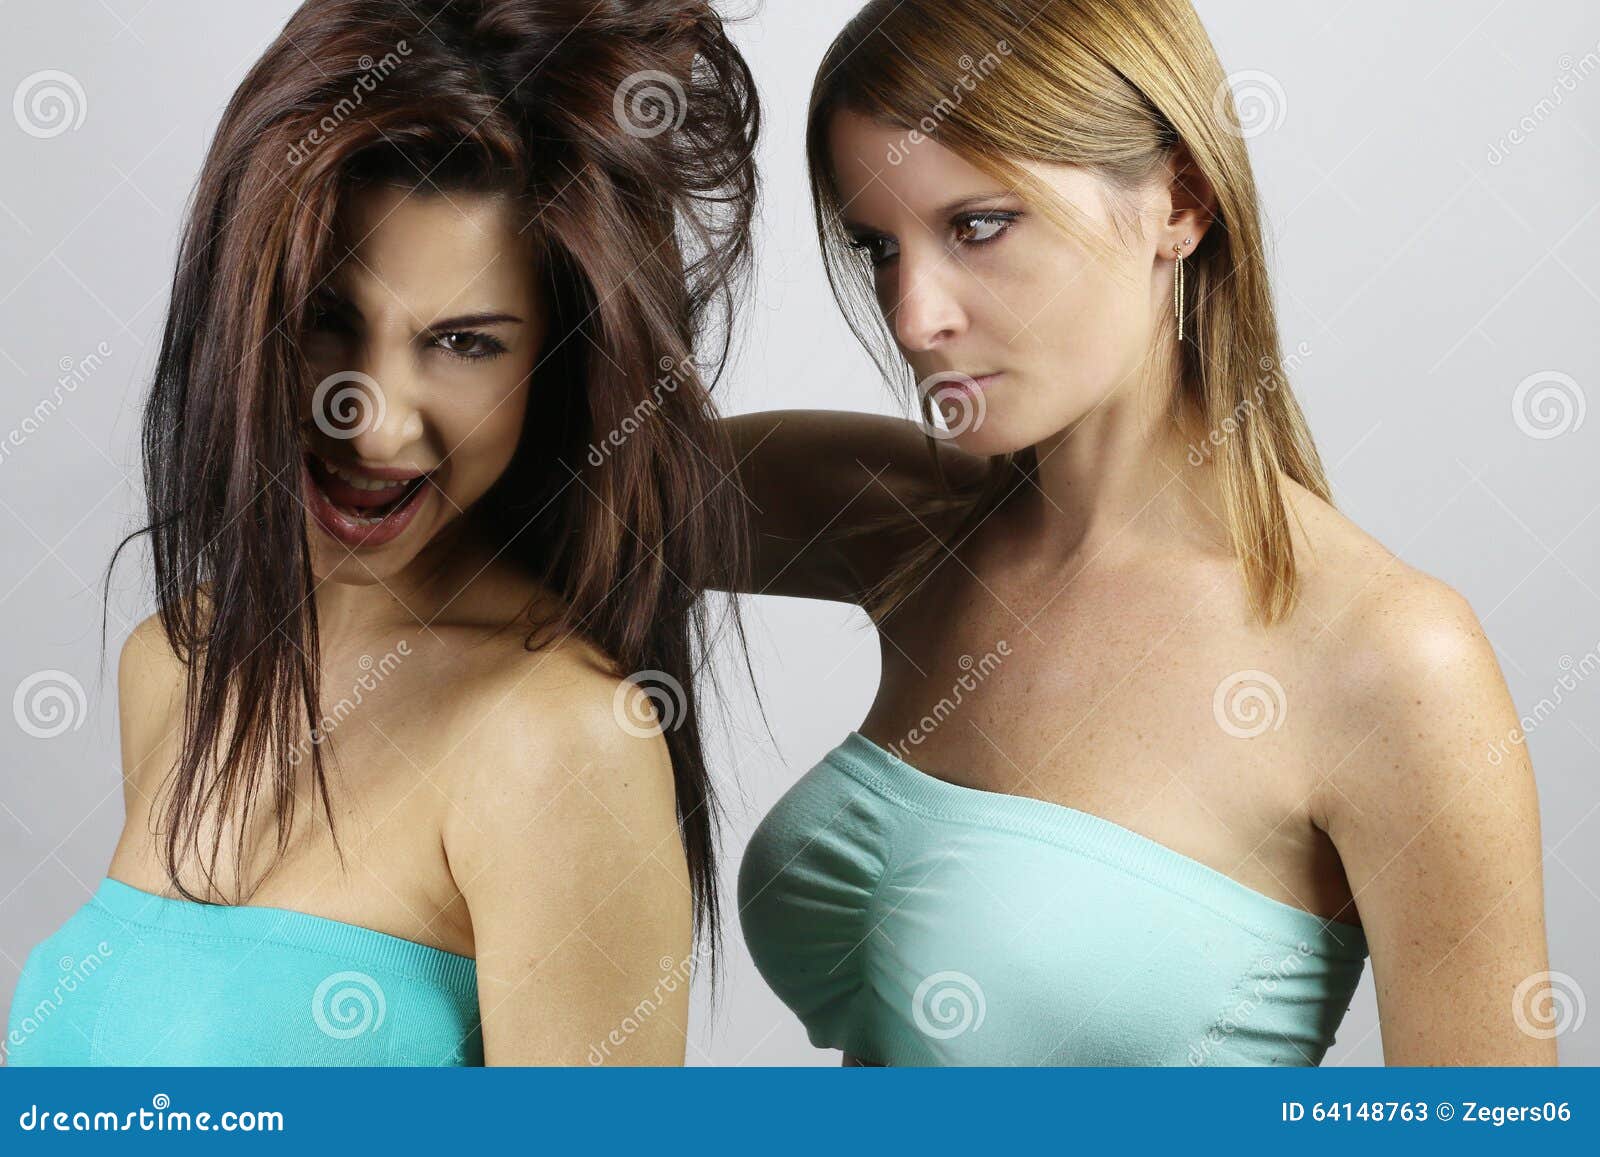 Girls Fighting In Underwear